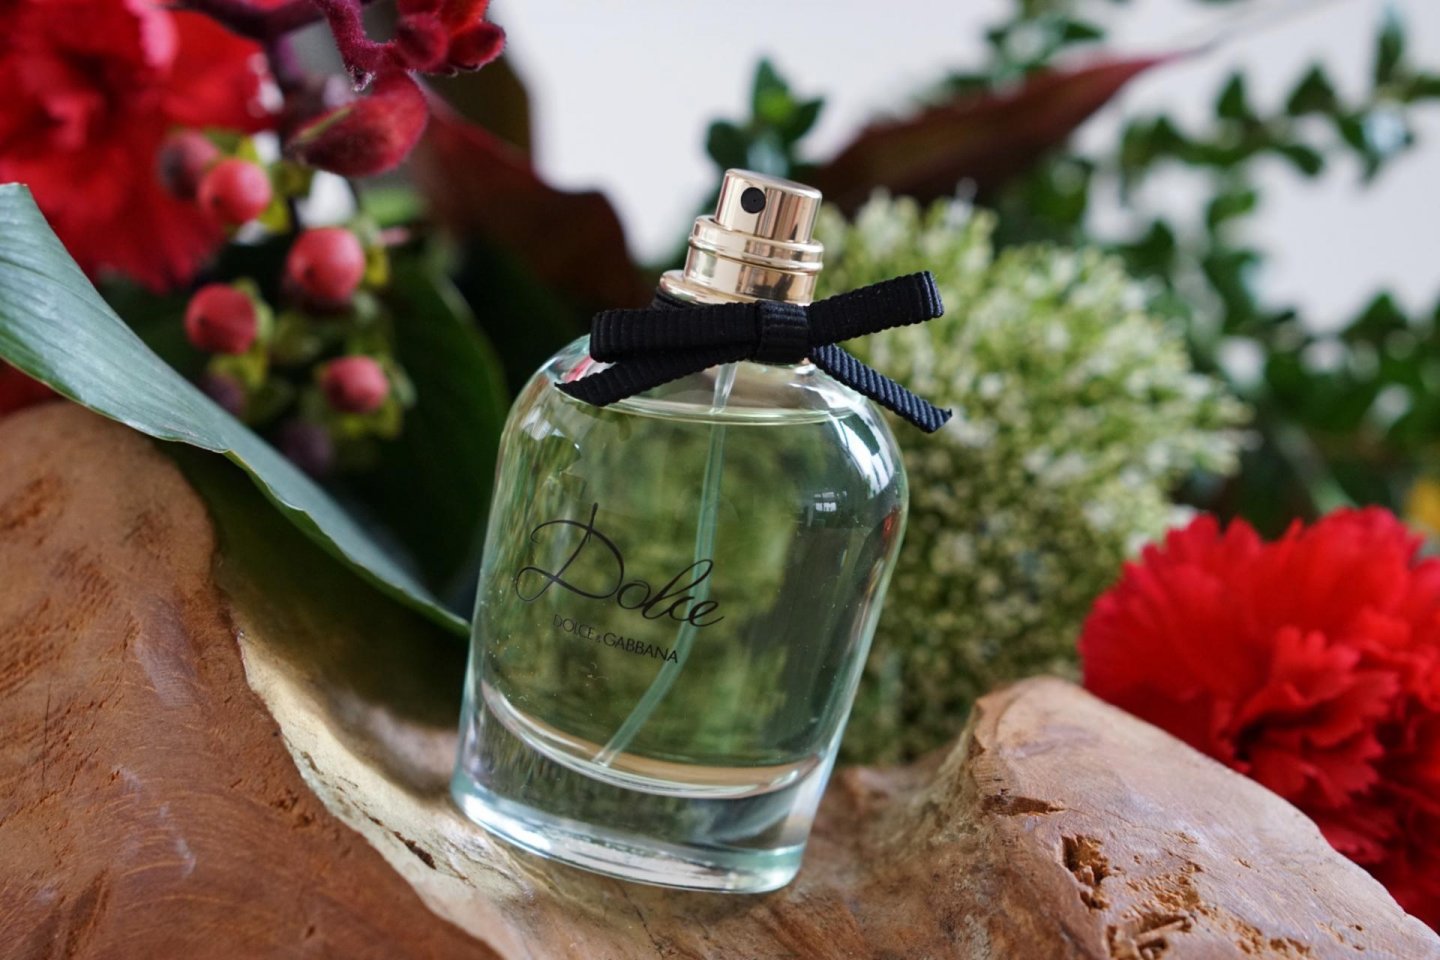 Dolce & Gabbana Dolce Eau de Parfum (EdP) review